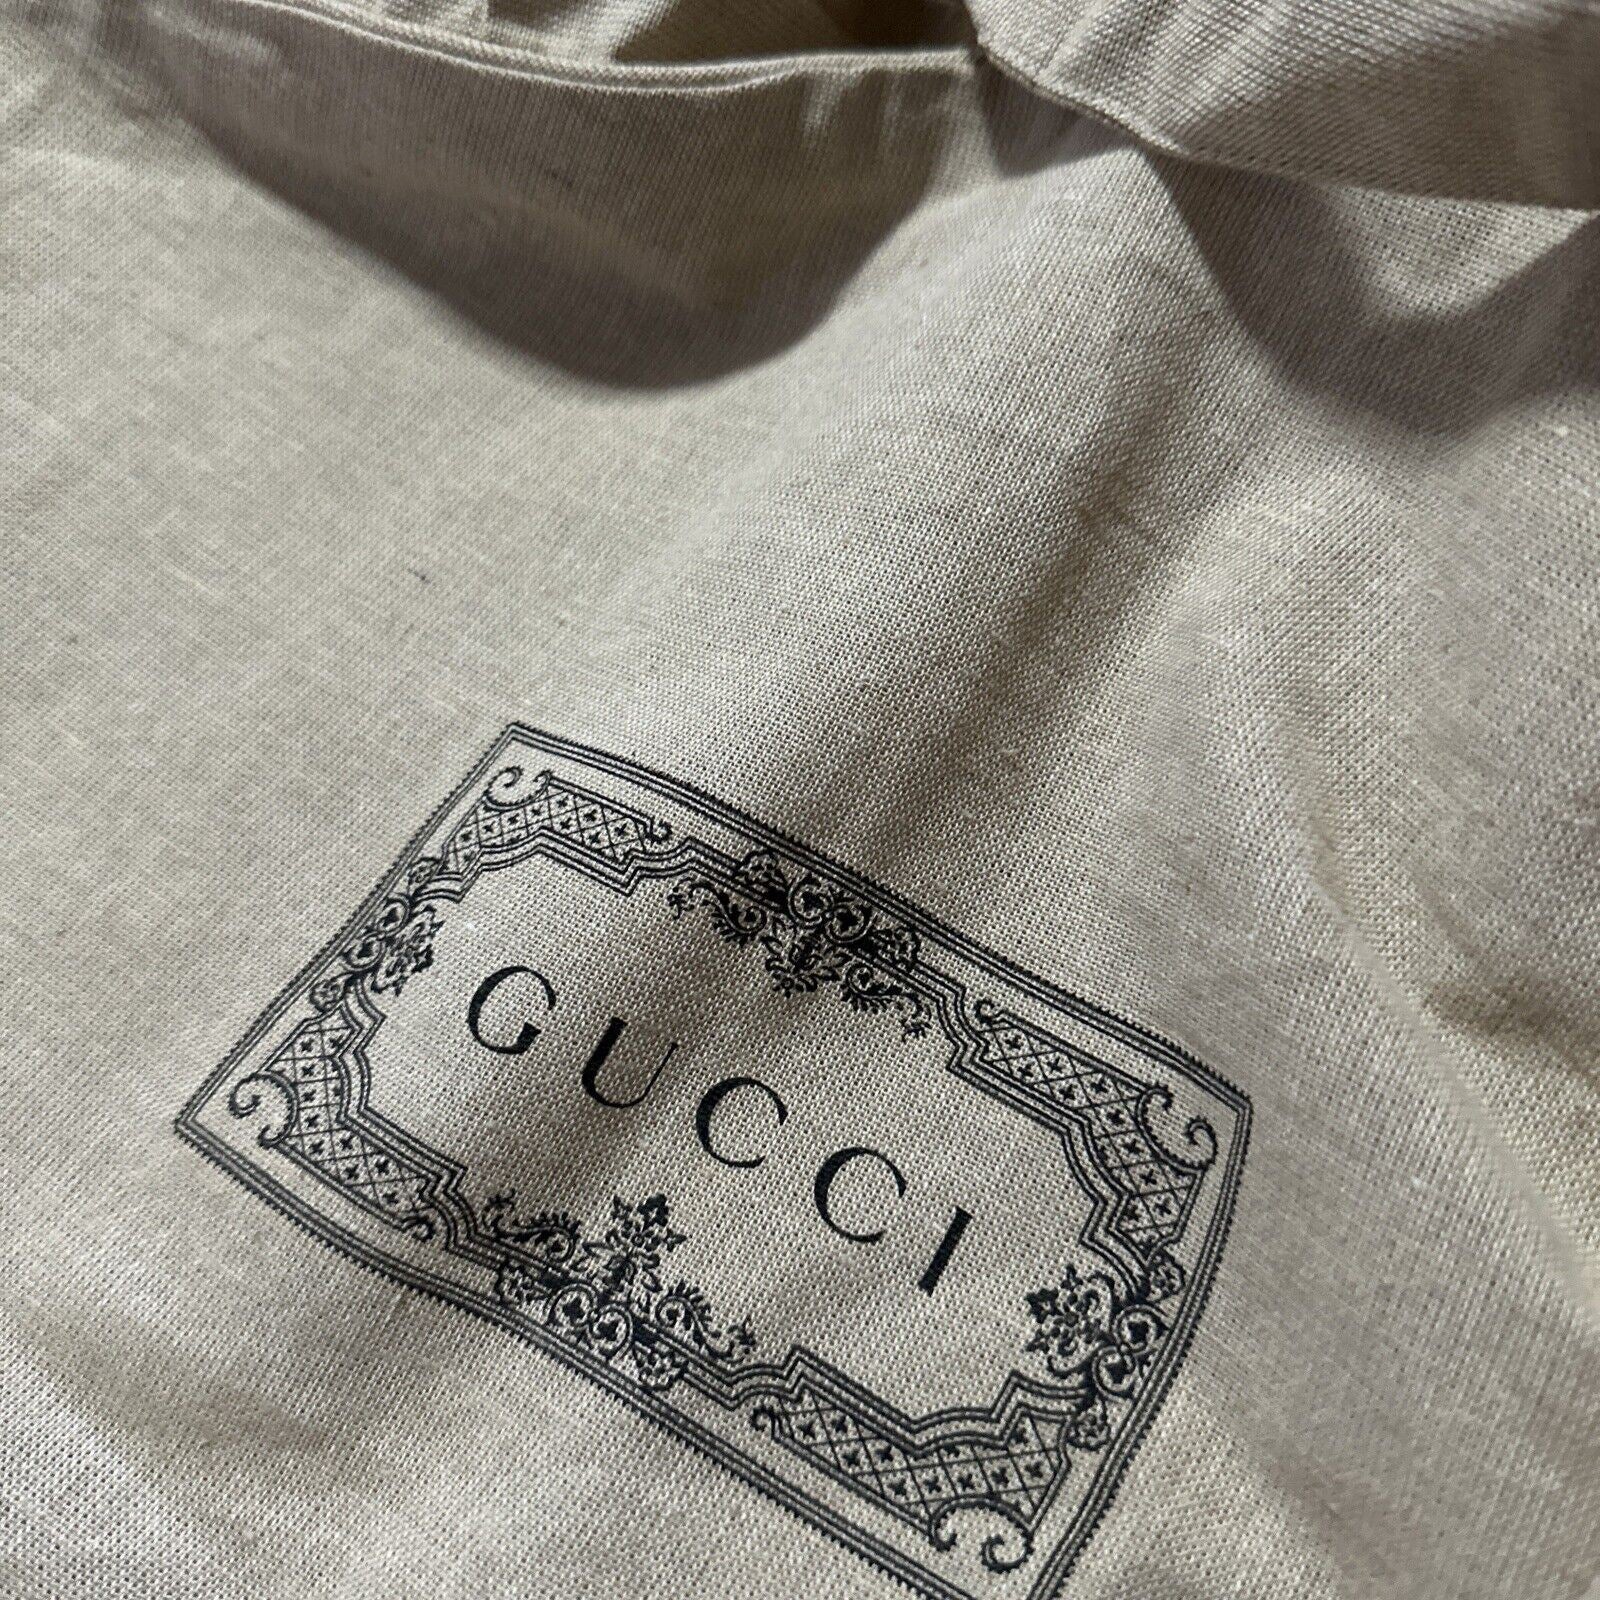 Brandneuer Gucci-Kleidungsanzug, jede Kleidung, Unisex-Tasche in LT-Braun